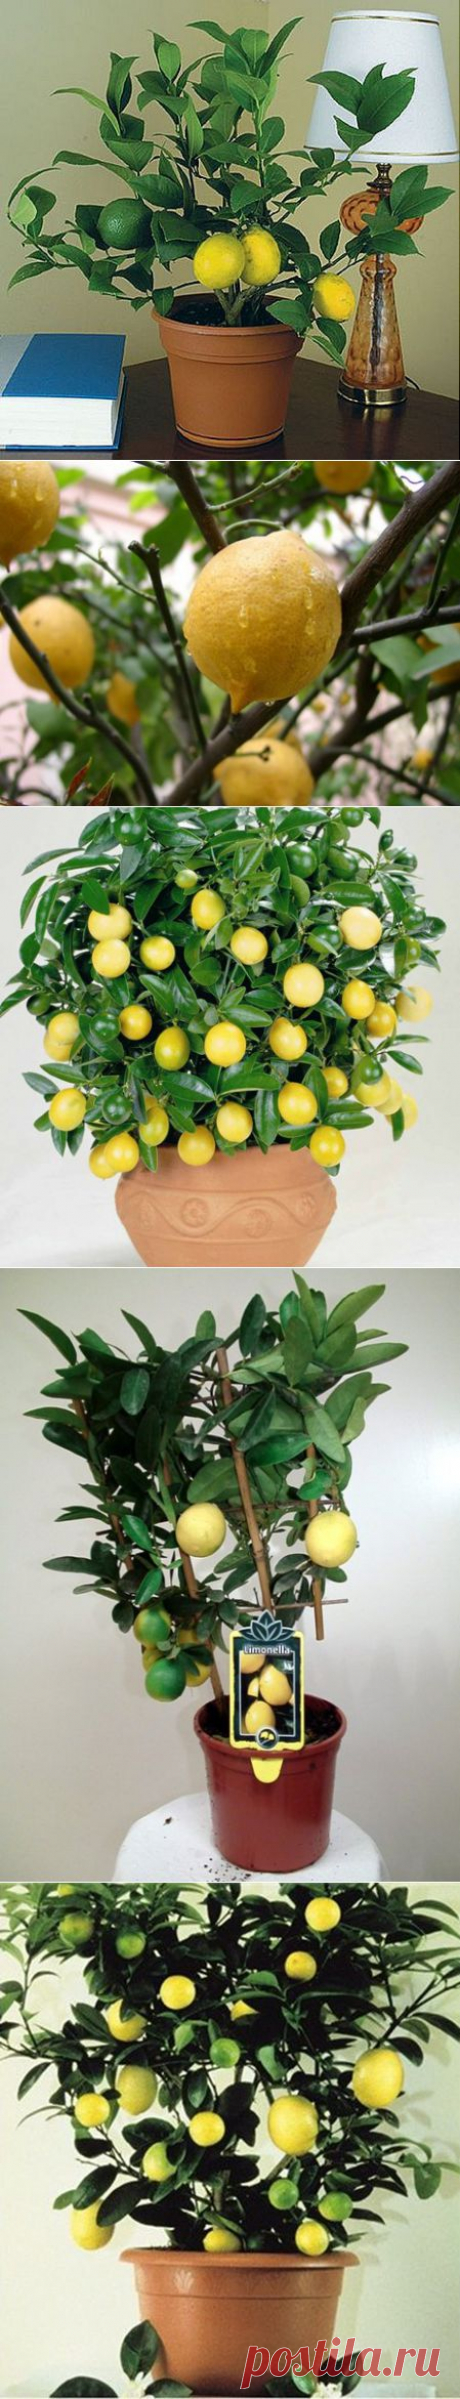 Комнатное растение лимон: выращивание и защита от вредителей | Женская книга